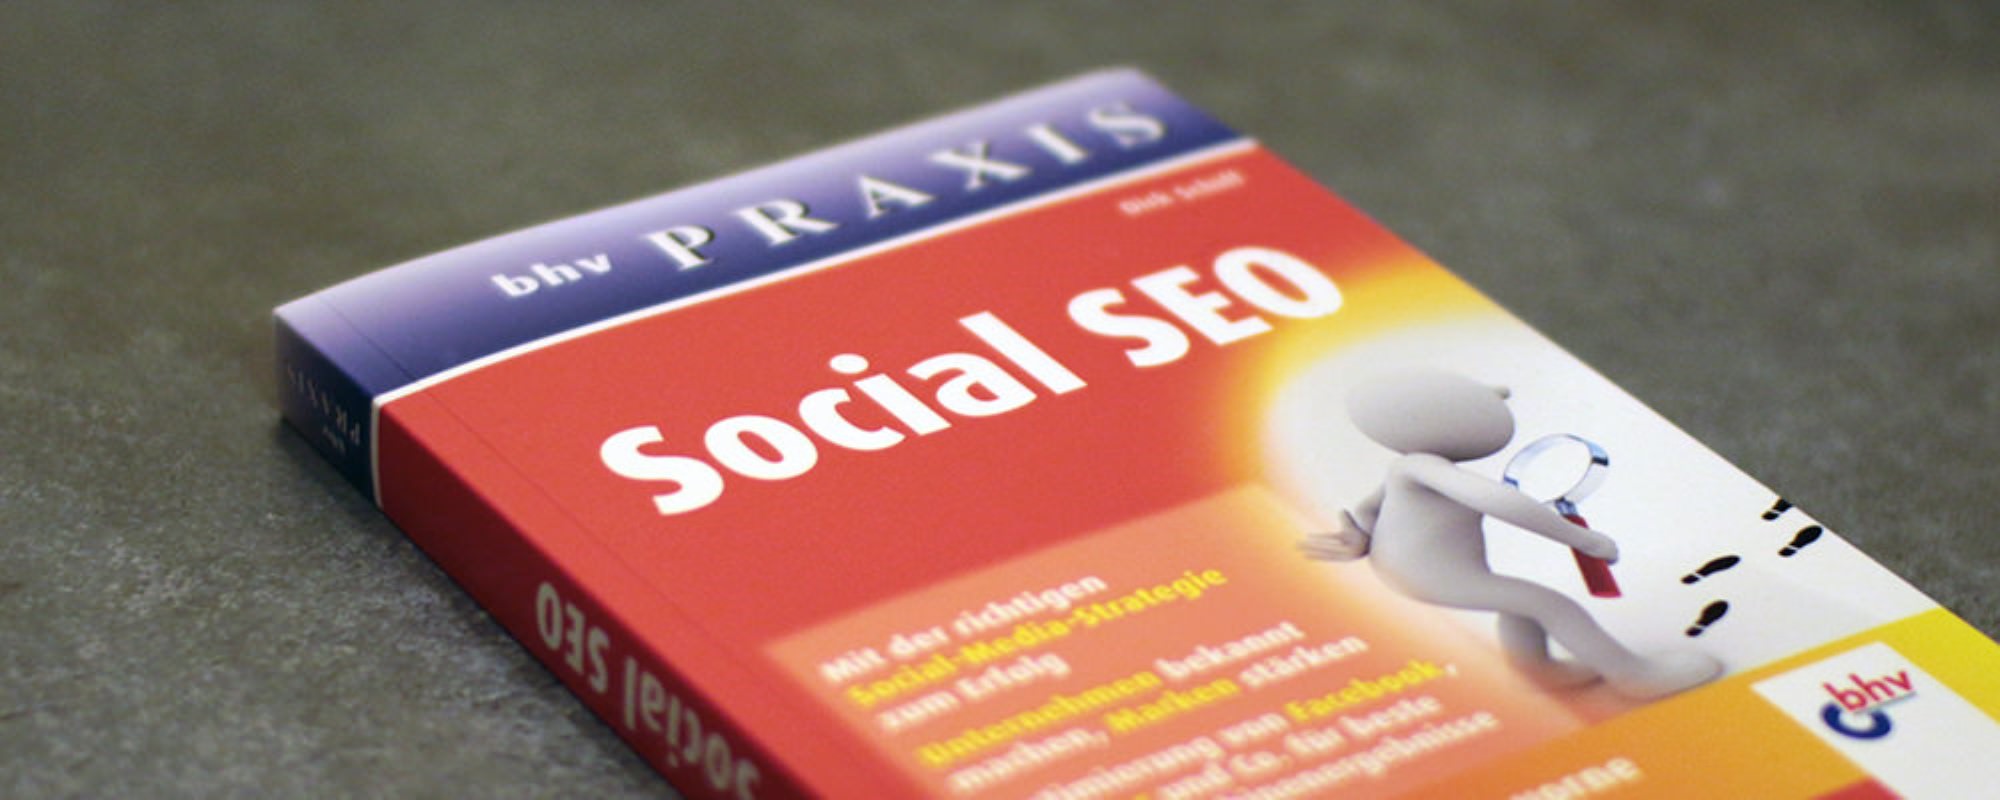 Buch „Social SEO“ von Dirk Schiff